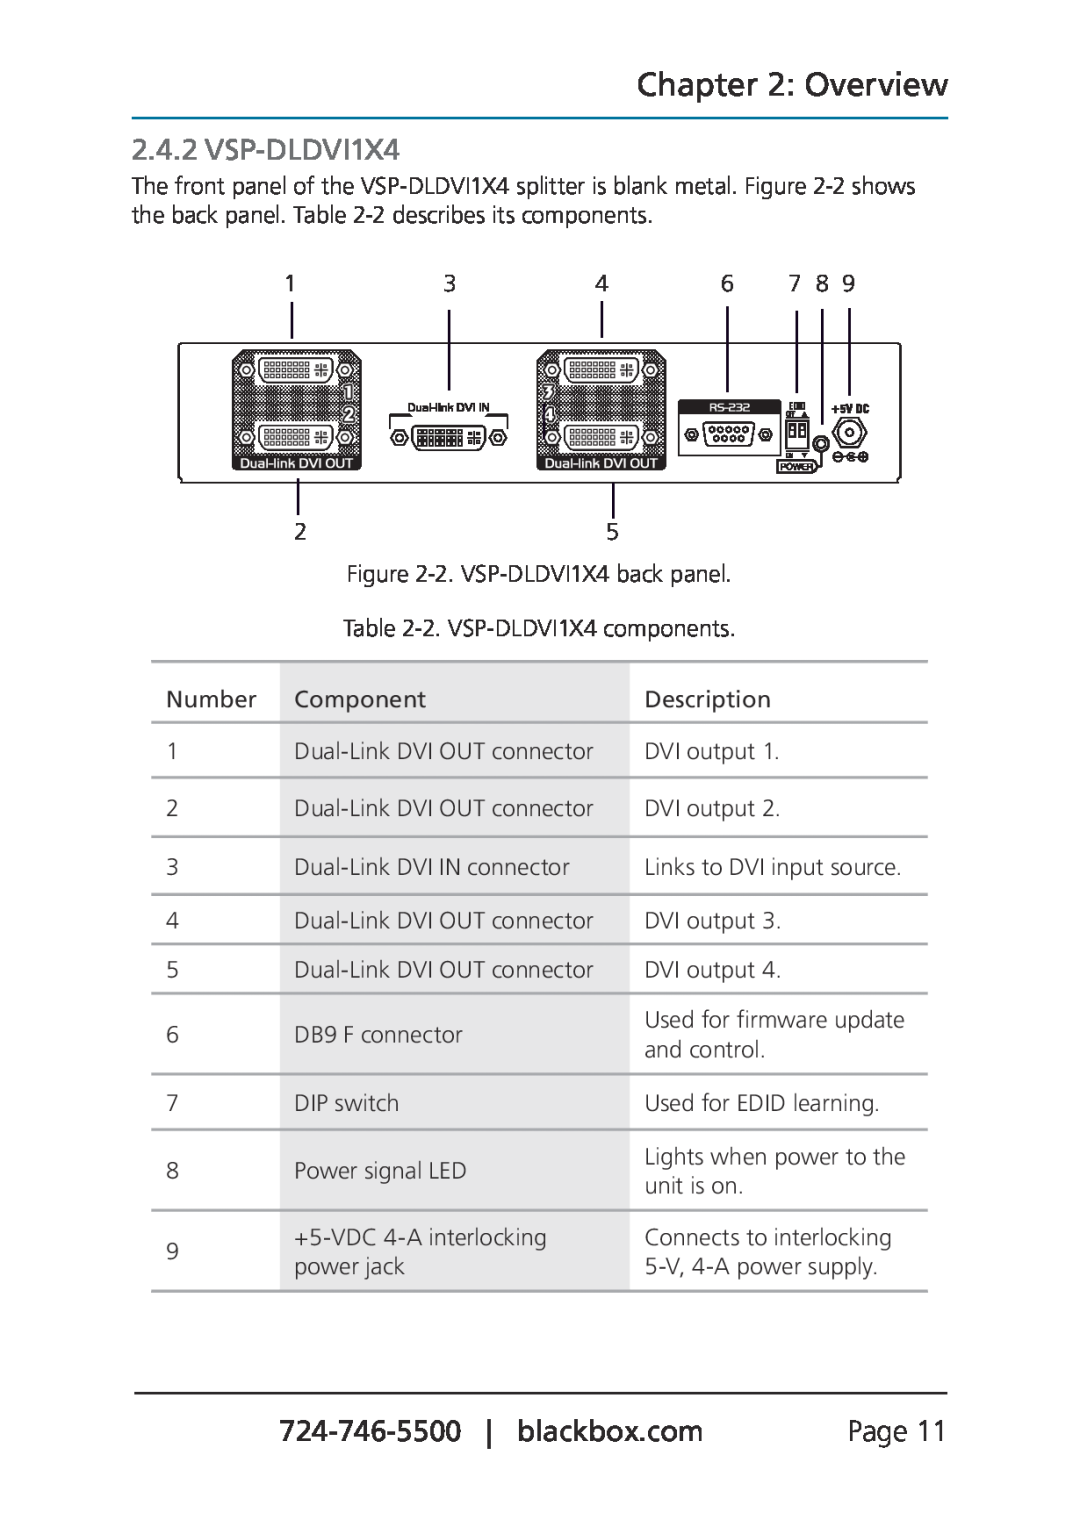 Black Box VSP-DLDVI1X2, Dual Link DVI Splitters manual VSP-DLDVI1X4, Overview 